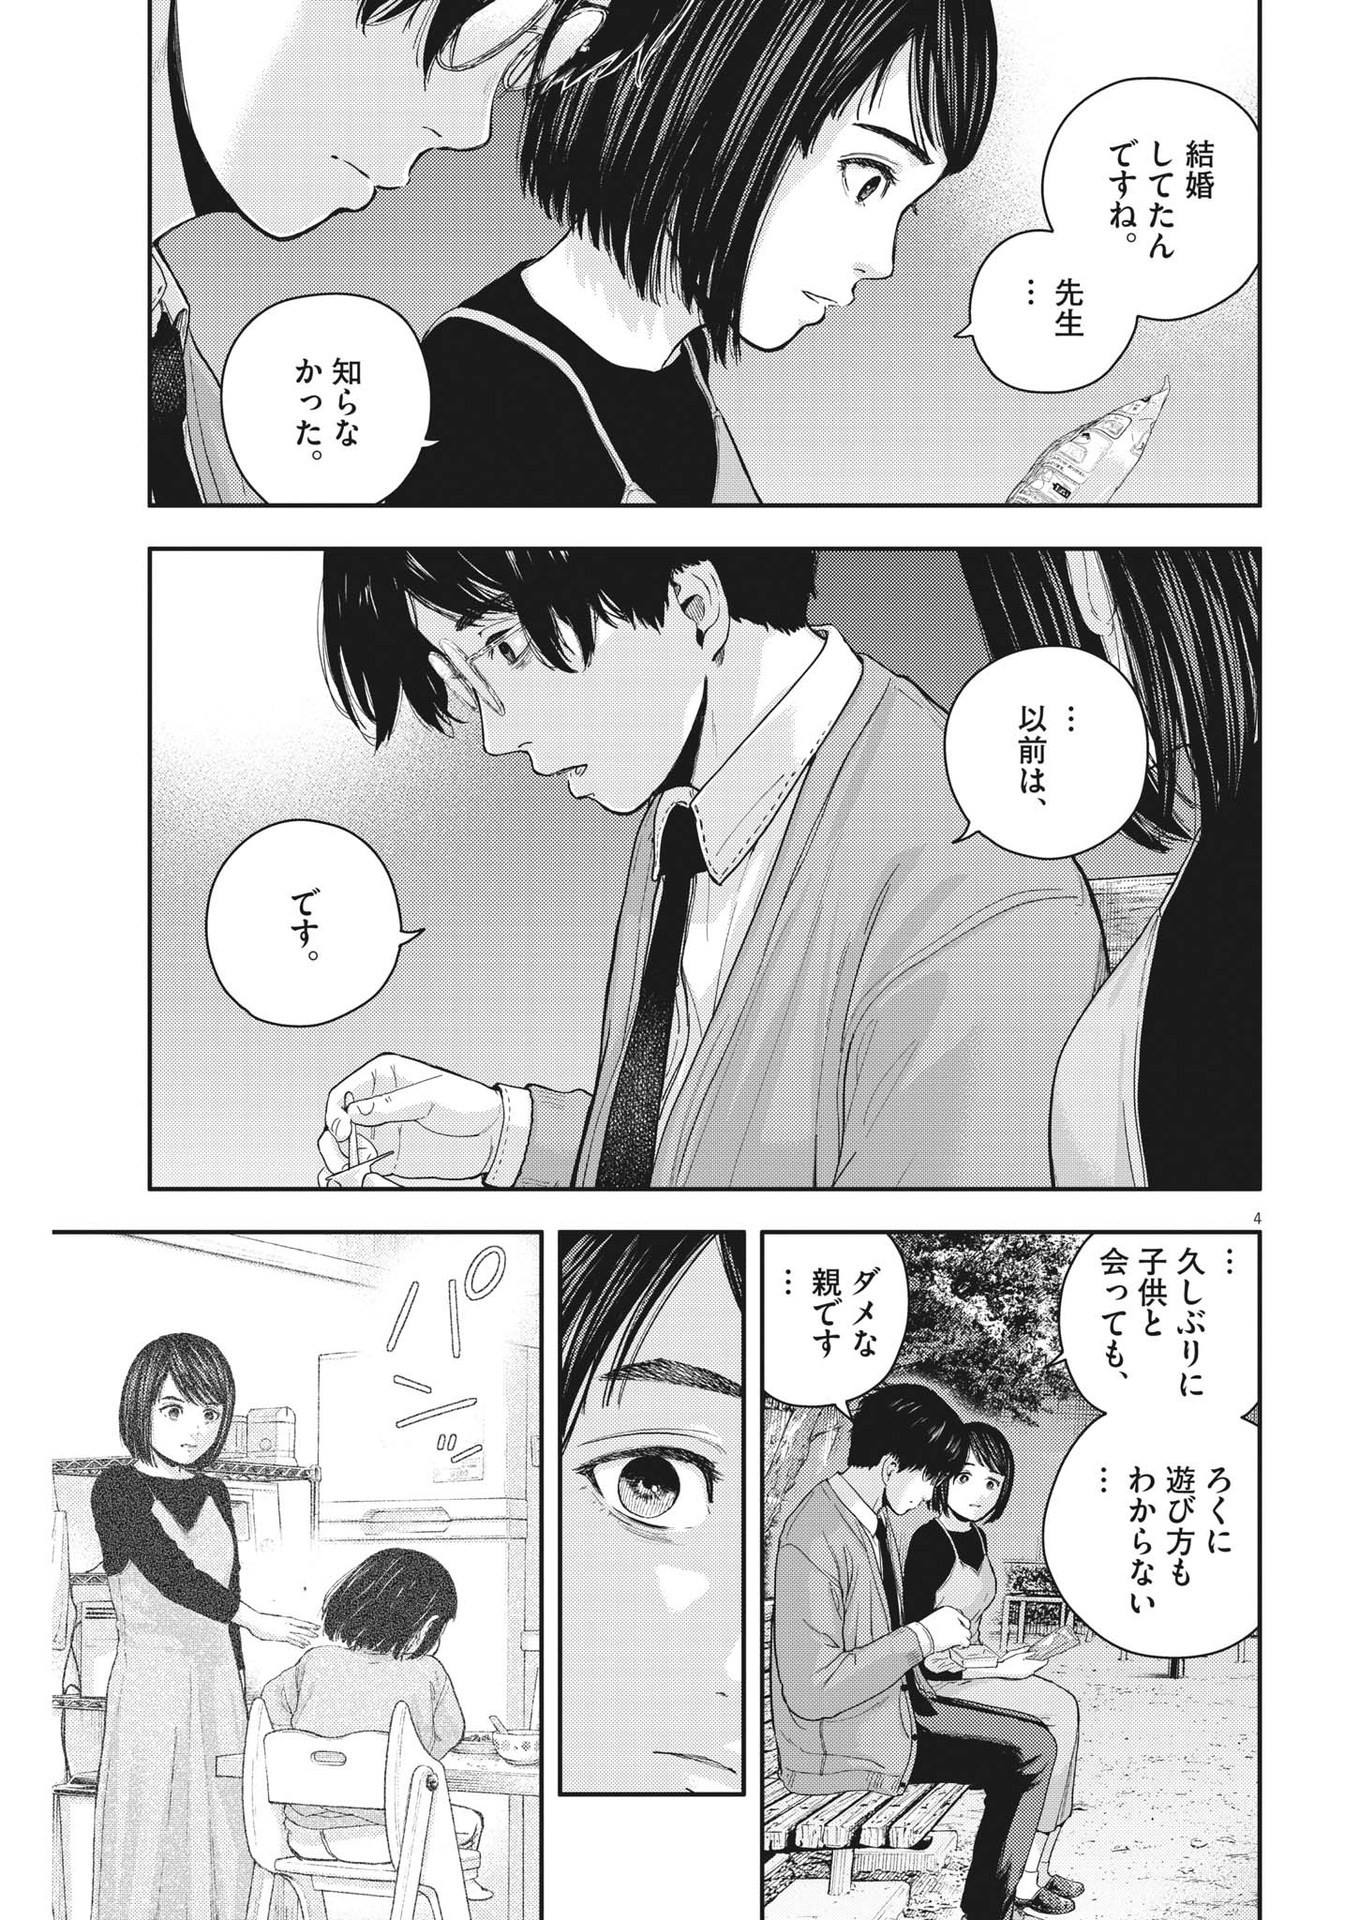 Yumenashi-sensei no Shinroshidou - Chapter 24 - Page 4